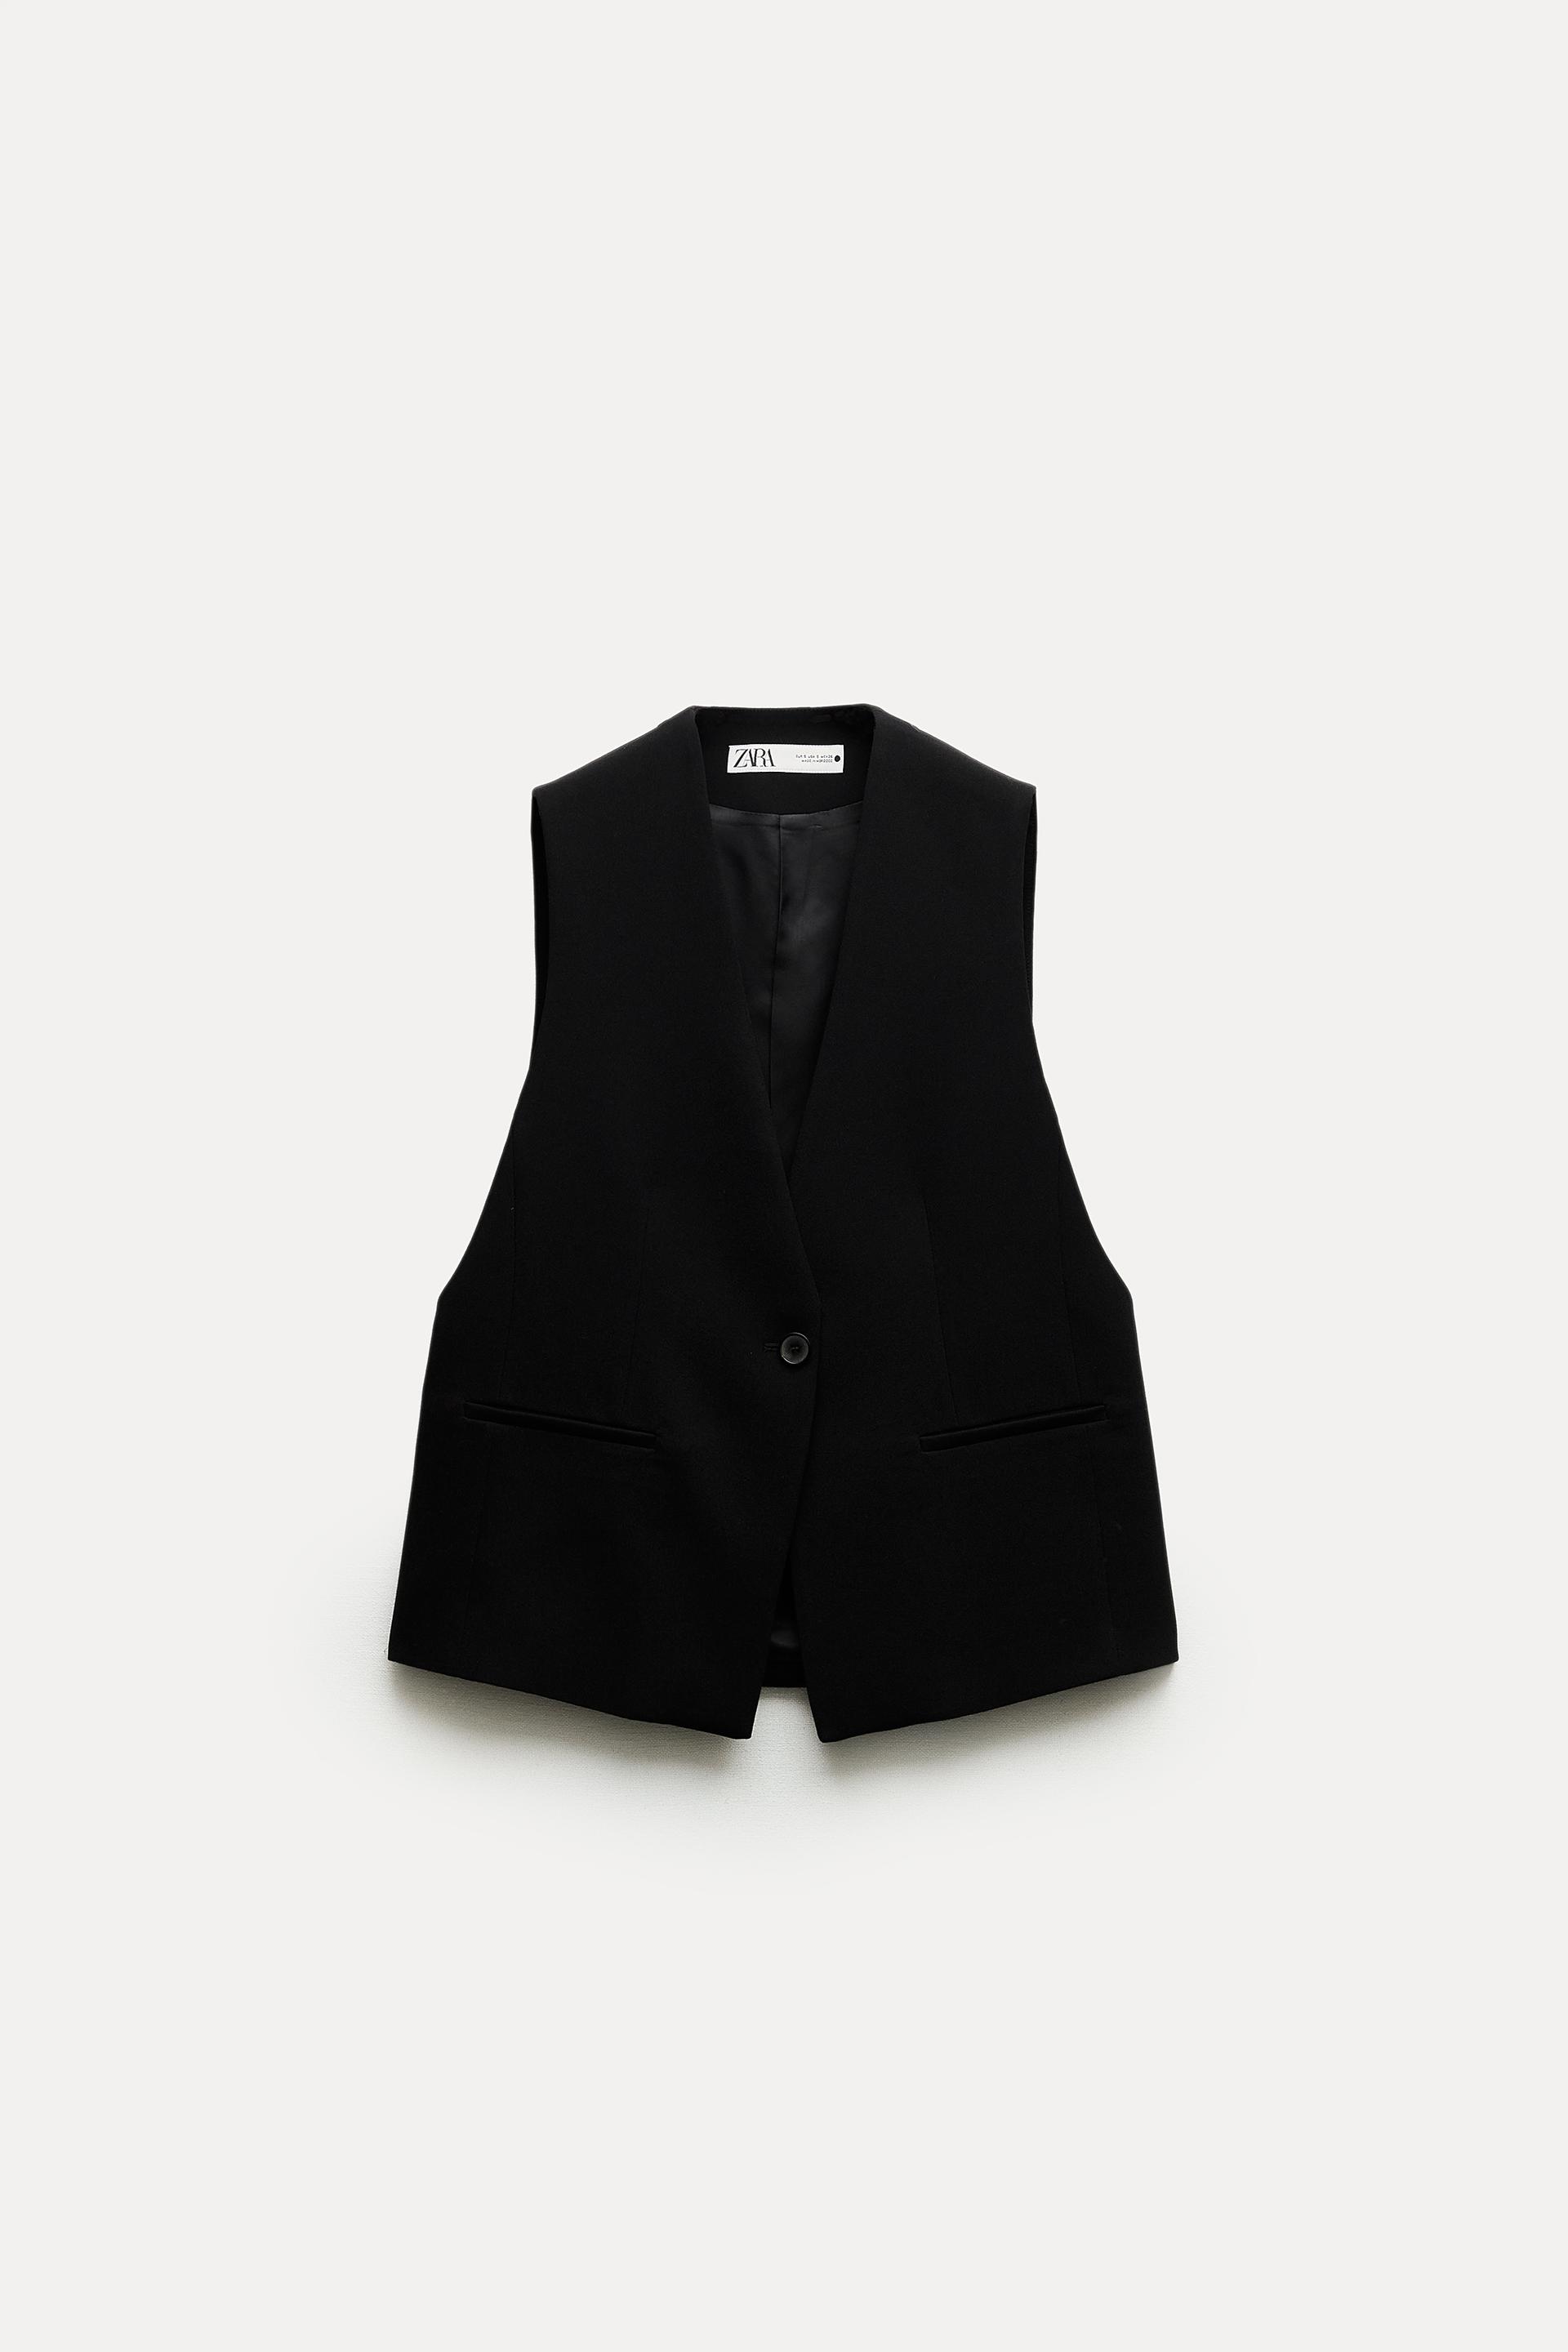 Жилет Zara ZW Collection With Vents, черный жилет zara quilted with hood черный